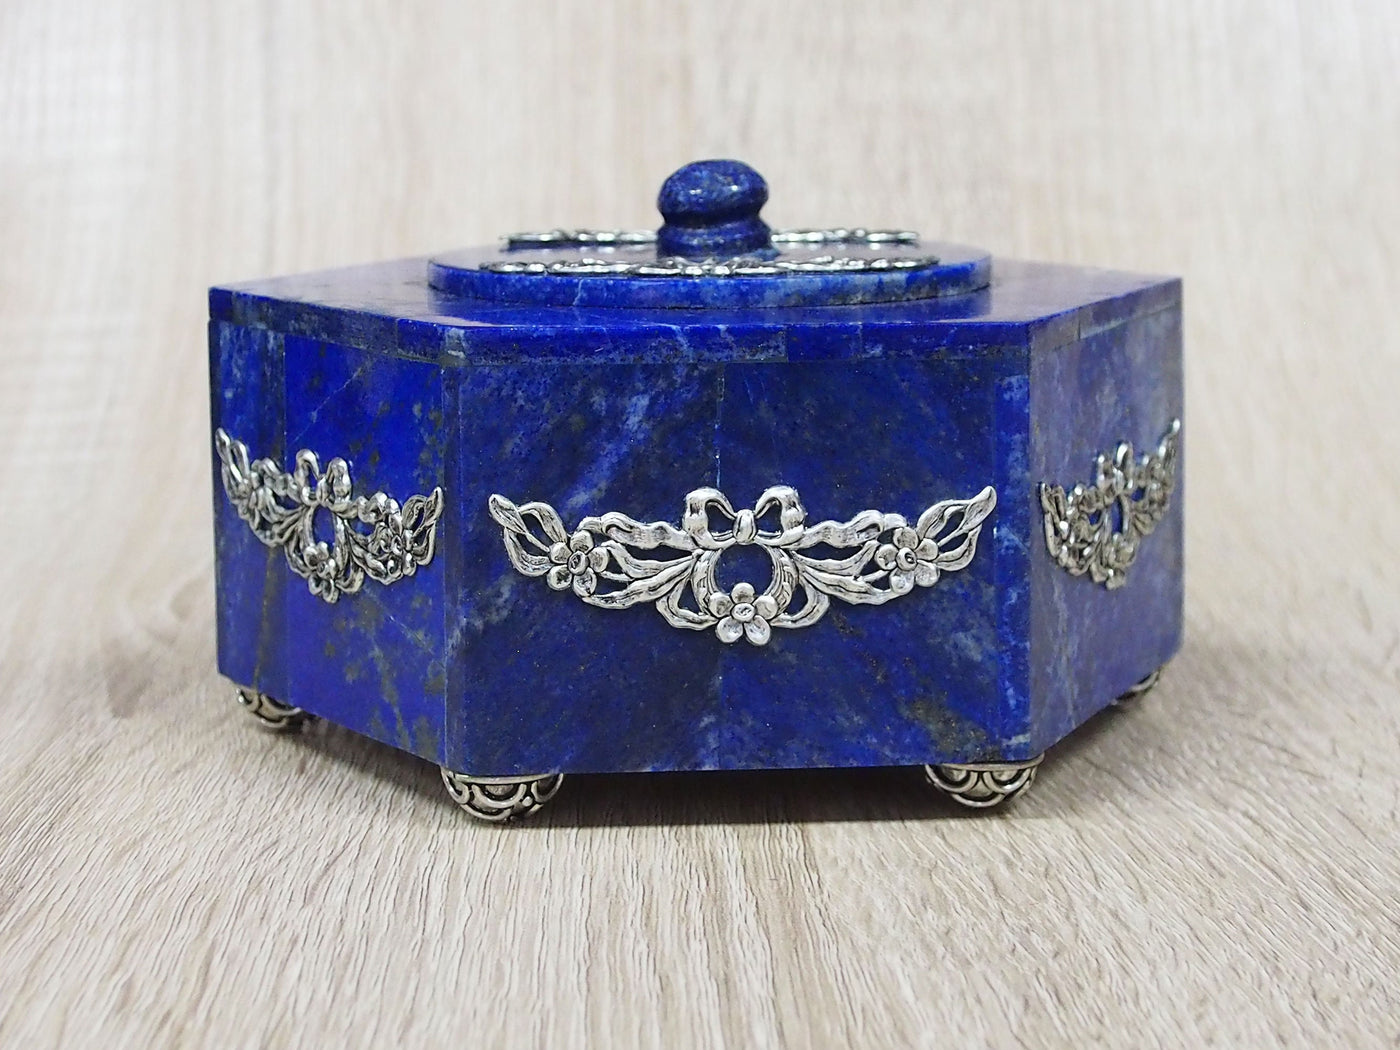 Extravagant Royal blau echt Lapis lazuli oktogon büchse Schmuck Dose schatulle Box  Weihrauch-Gefäß aus Afghanistan Nr-22  Orientsbazar   